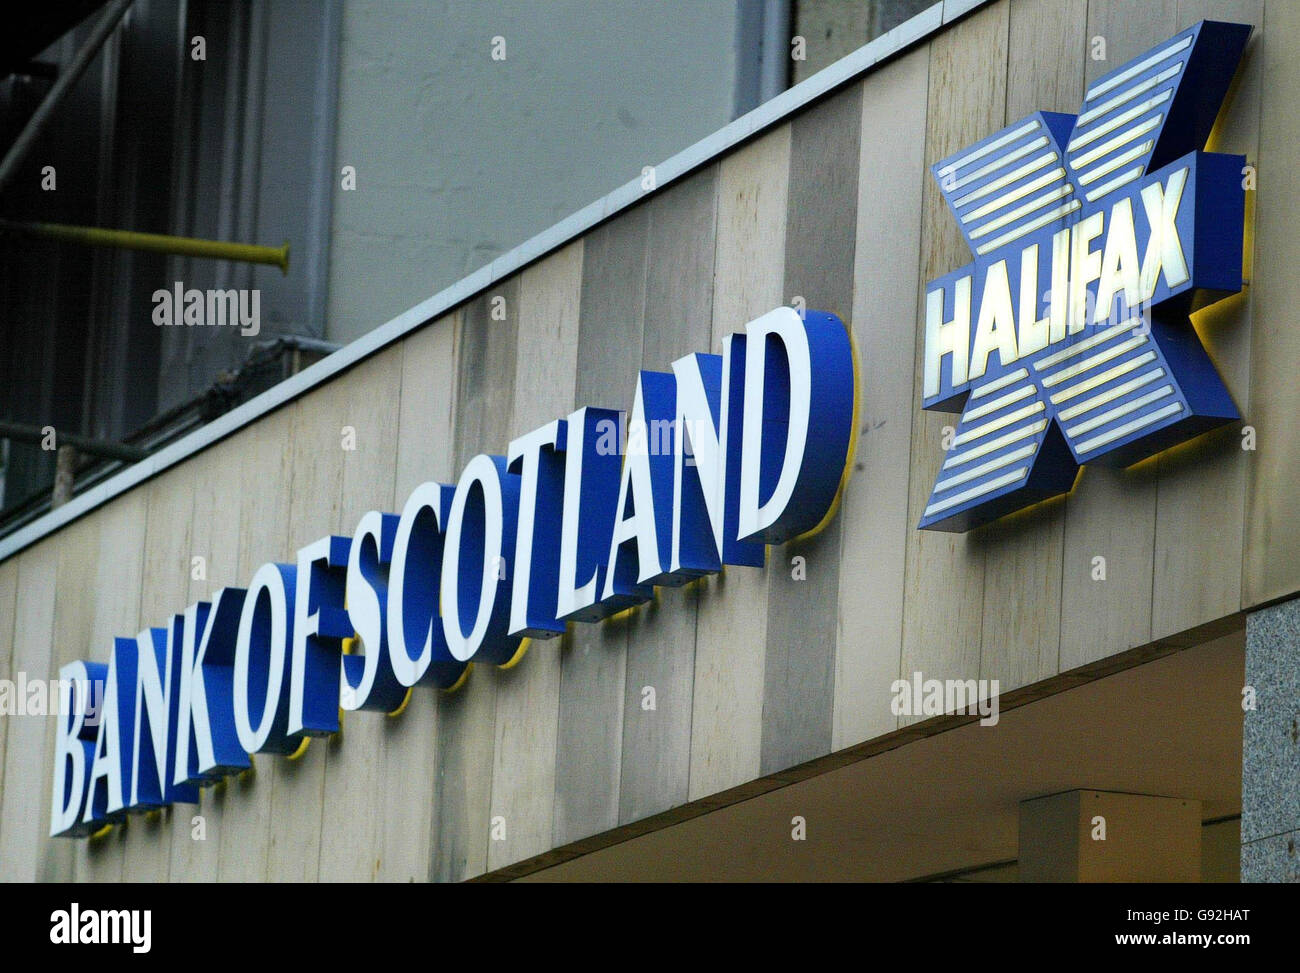 Una filiale Halifax Bank of Scotland (HBOS) a George Street, Edimburgo, martedì 10 gennaio 2005. HBOS si è impegnata a scuotere il mercato bancario irlandese oggi dopo aver annunciato i piani per la distribuzione di una catena di filiali di alto livello. La divisione irlandese del gruppo - Bank of Scotland (Ireland) - cercherà di rompere il dominio di Bank of Ireland e Allied Irish Bank, che si pensa abbiano un rapporto con il 91% dei clienti irlandesi. Tenterà di scatenare una battaglia tra gli operatori lanciando un tasso del conto di risparmio del 3.75%, battendo tutti i tassi esistenti disponibili nel paese, e offrendo più a lungo Foto Stock